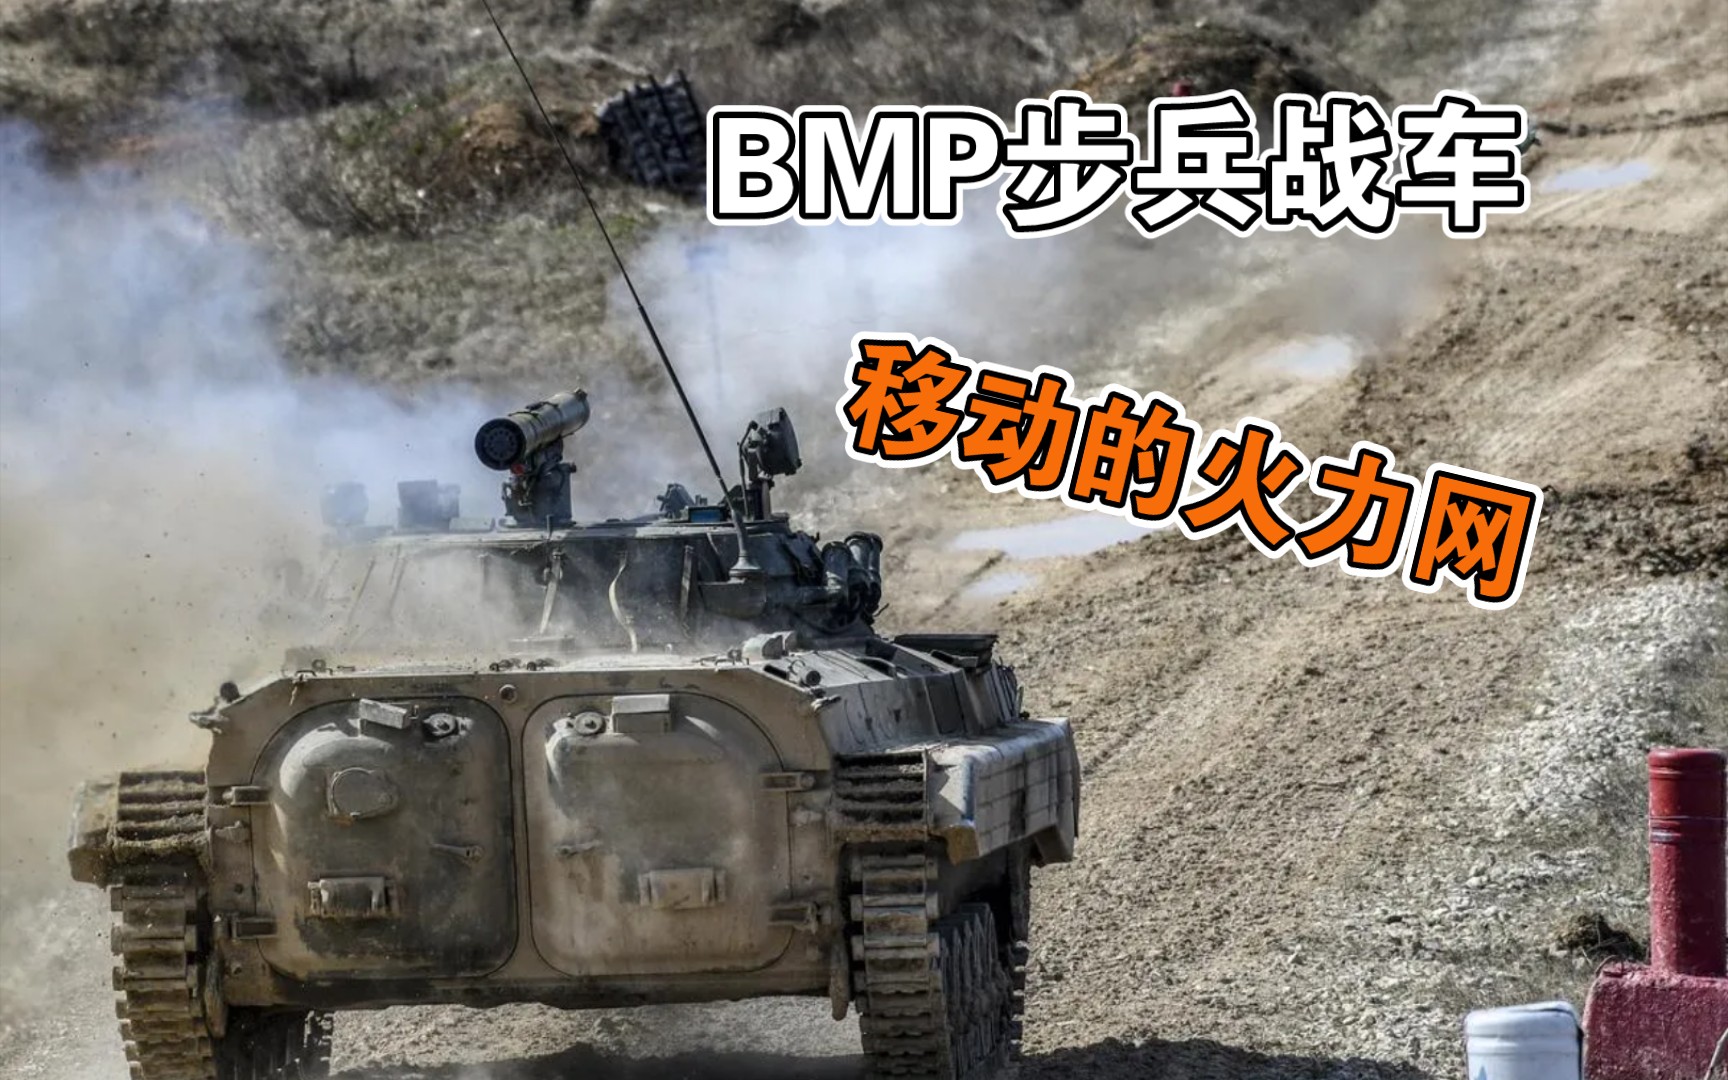 BMP步兵战车：它是如何改变了步兵战术和装甲战术的